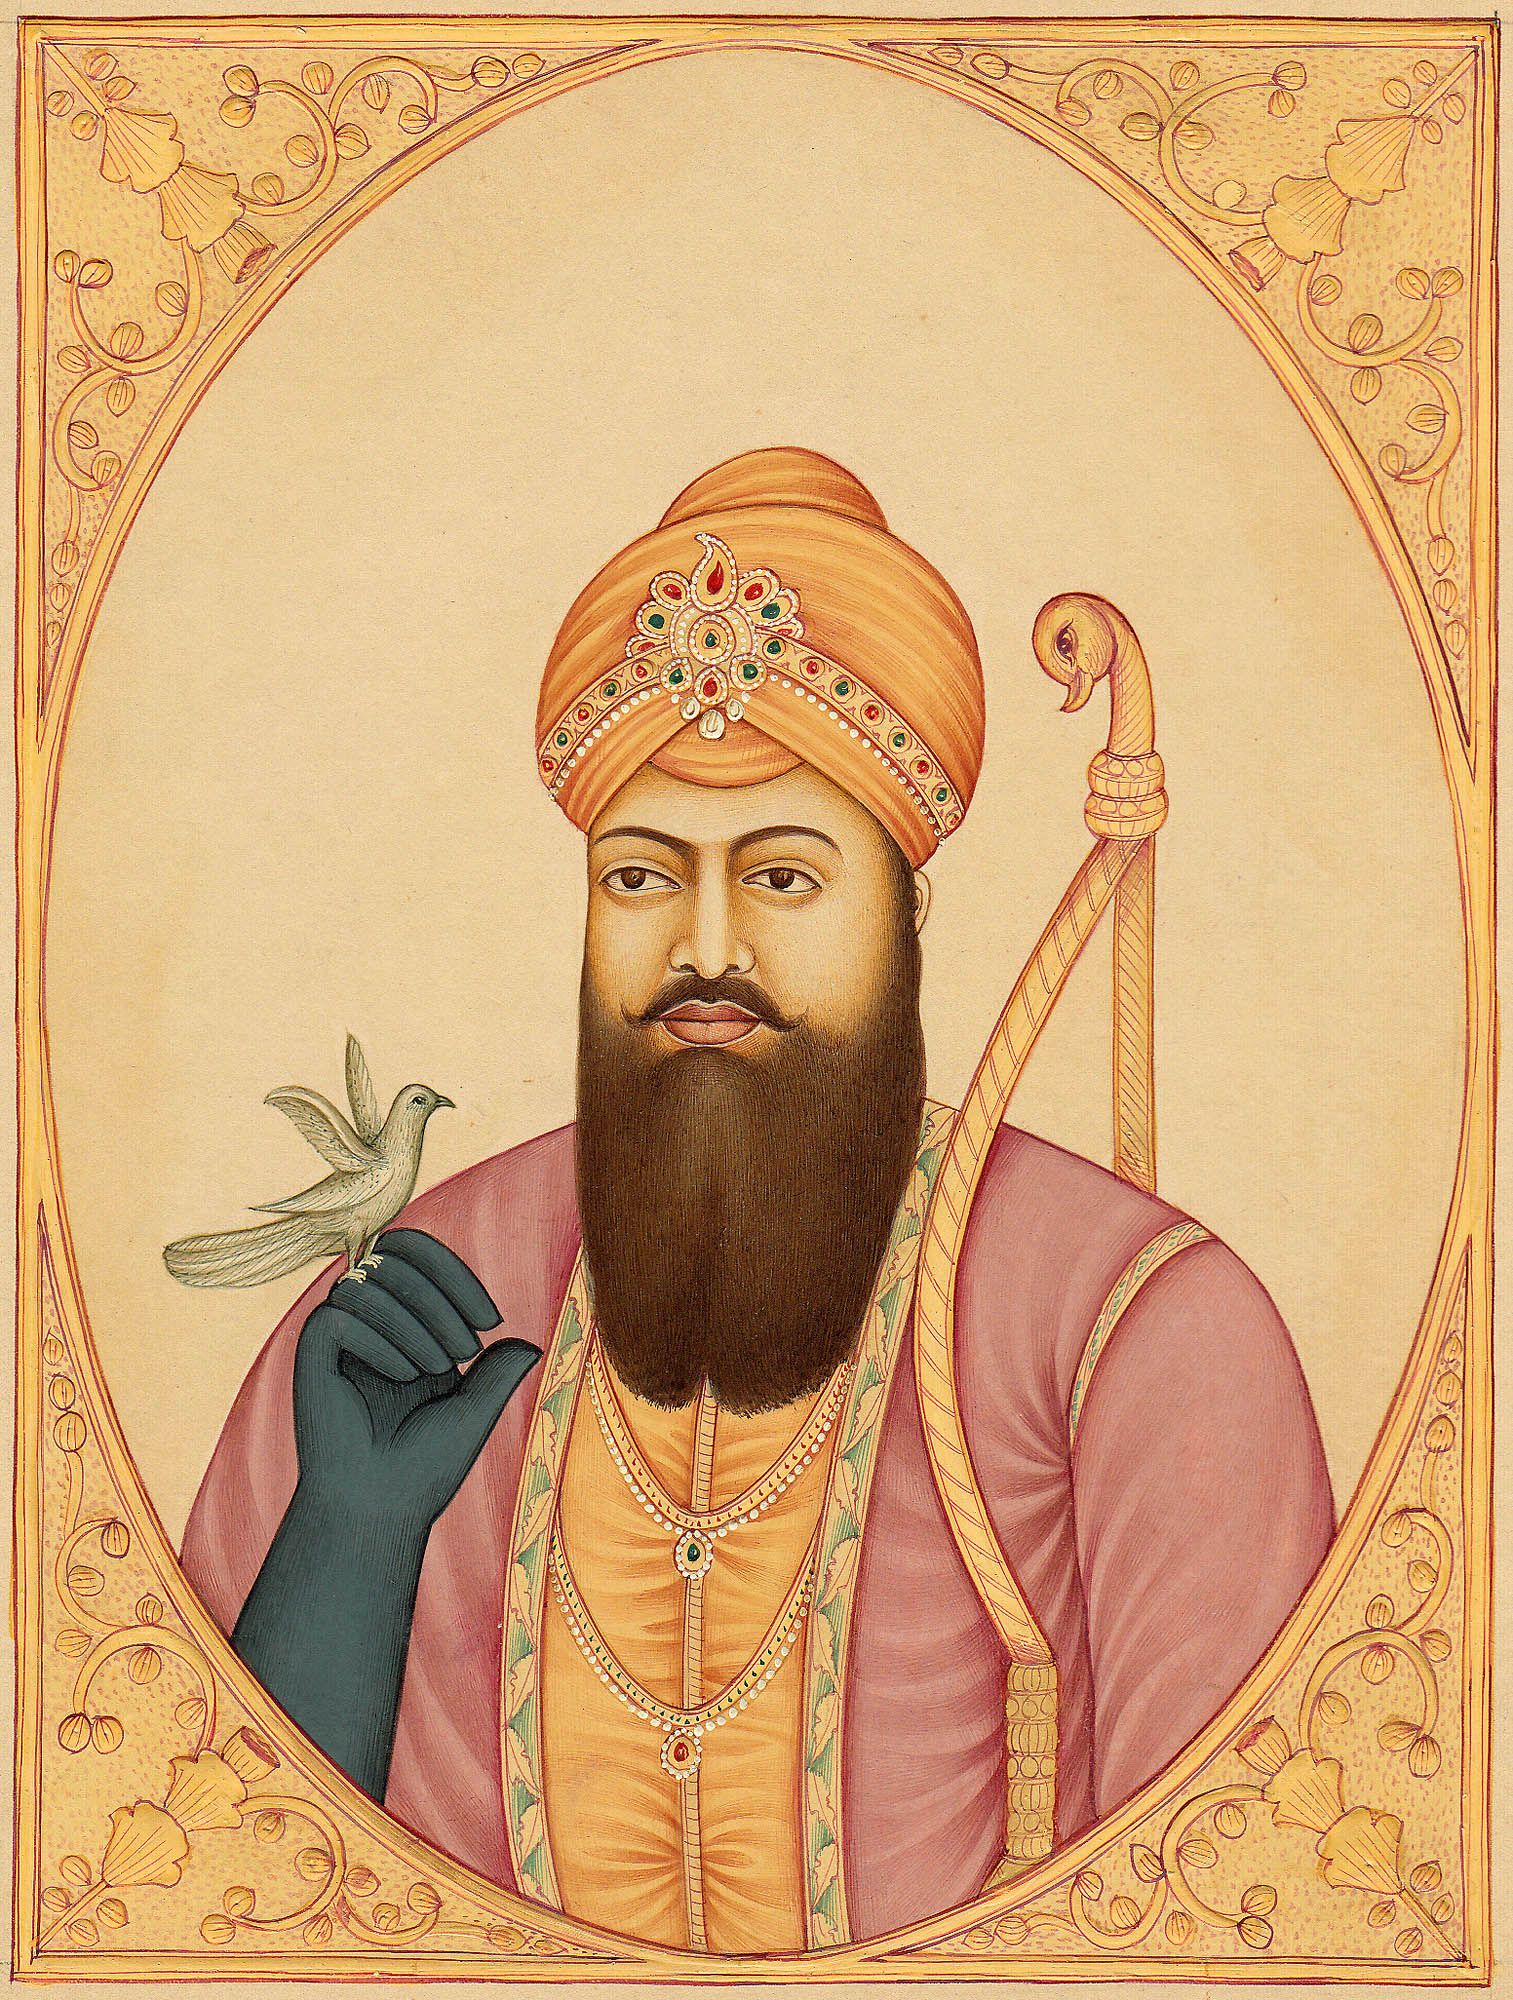 Sri Guru Hargobind Sahib Ji (6th Sikh Guru)